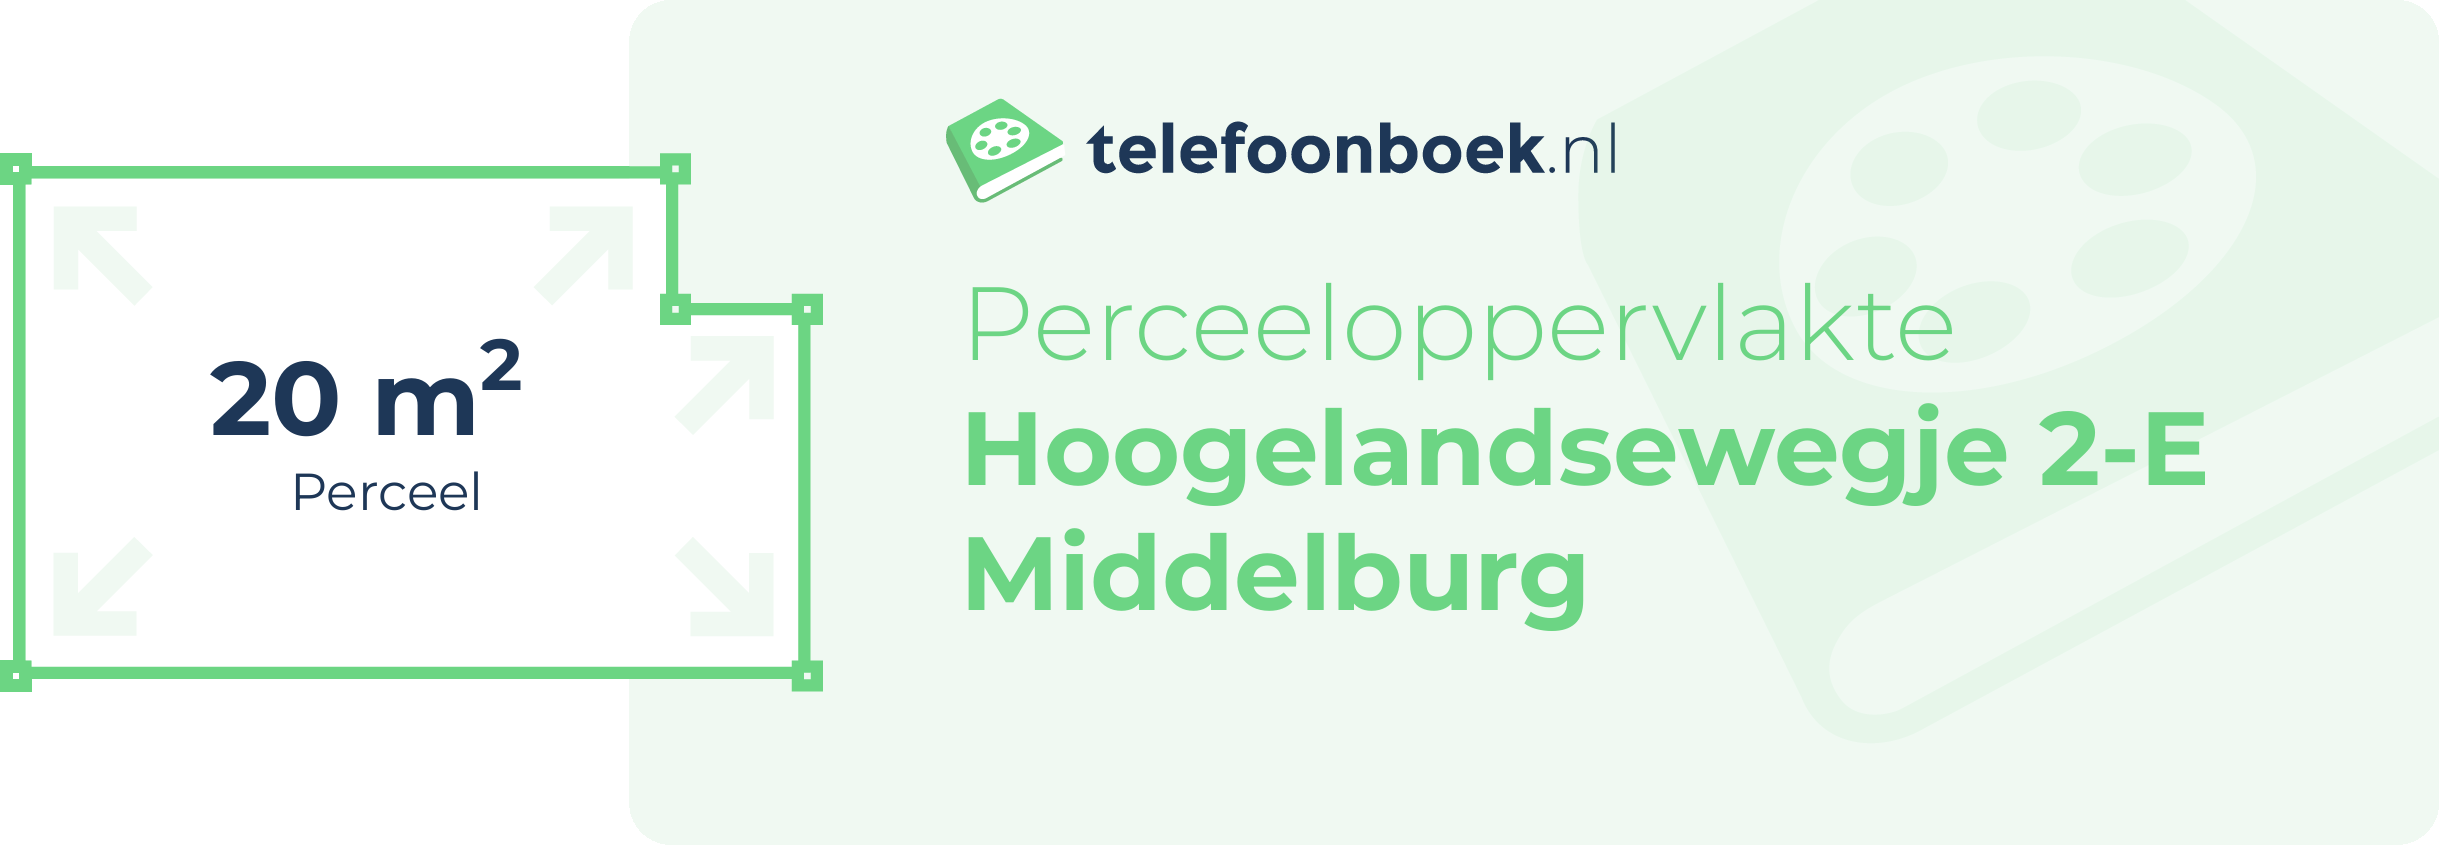 Perceeloppervlakte Hoogelandsewegje 2-E Middelburg